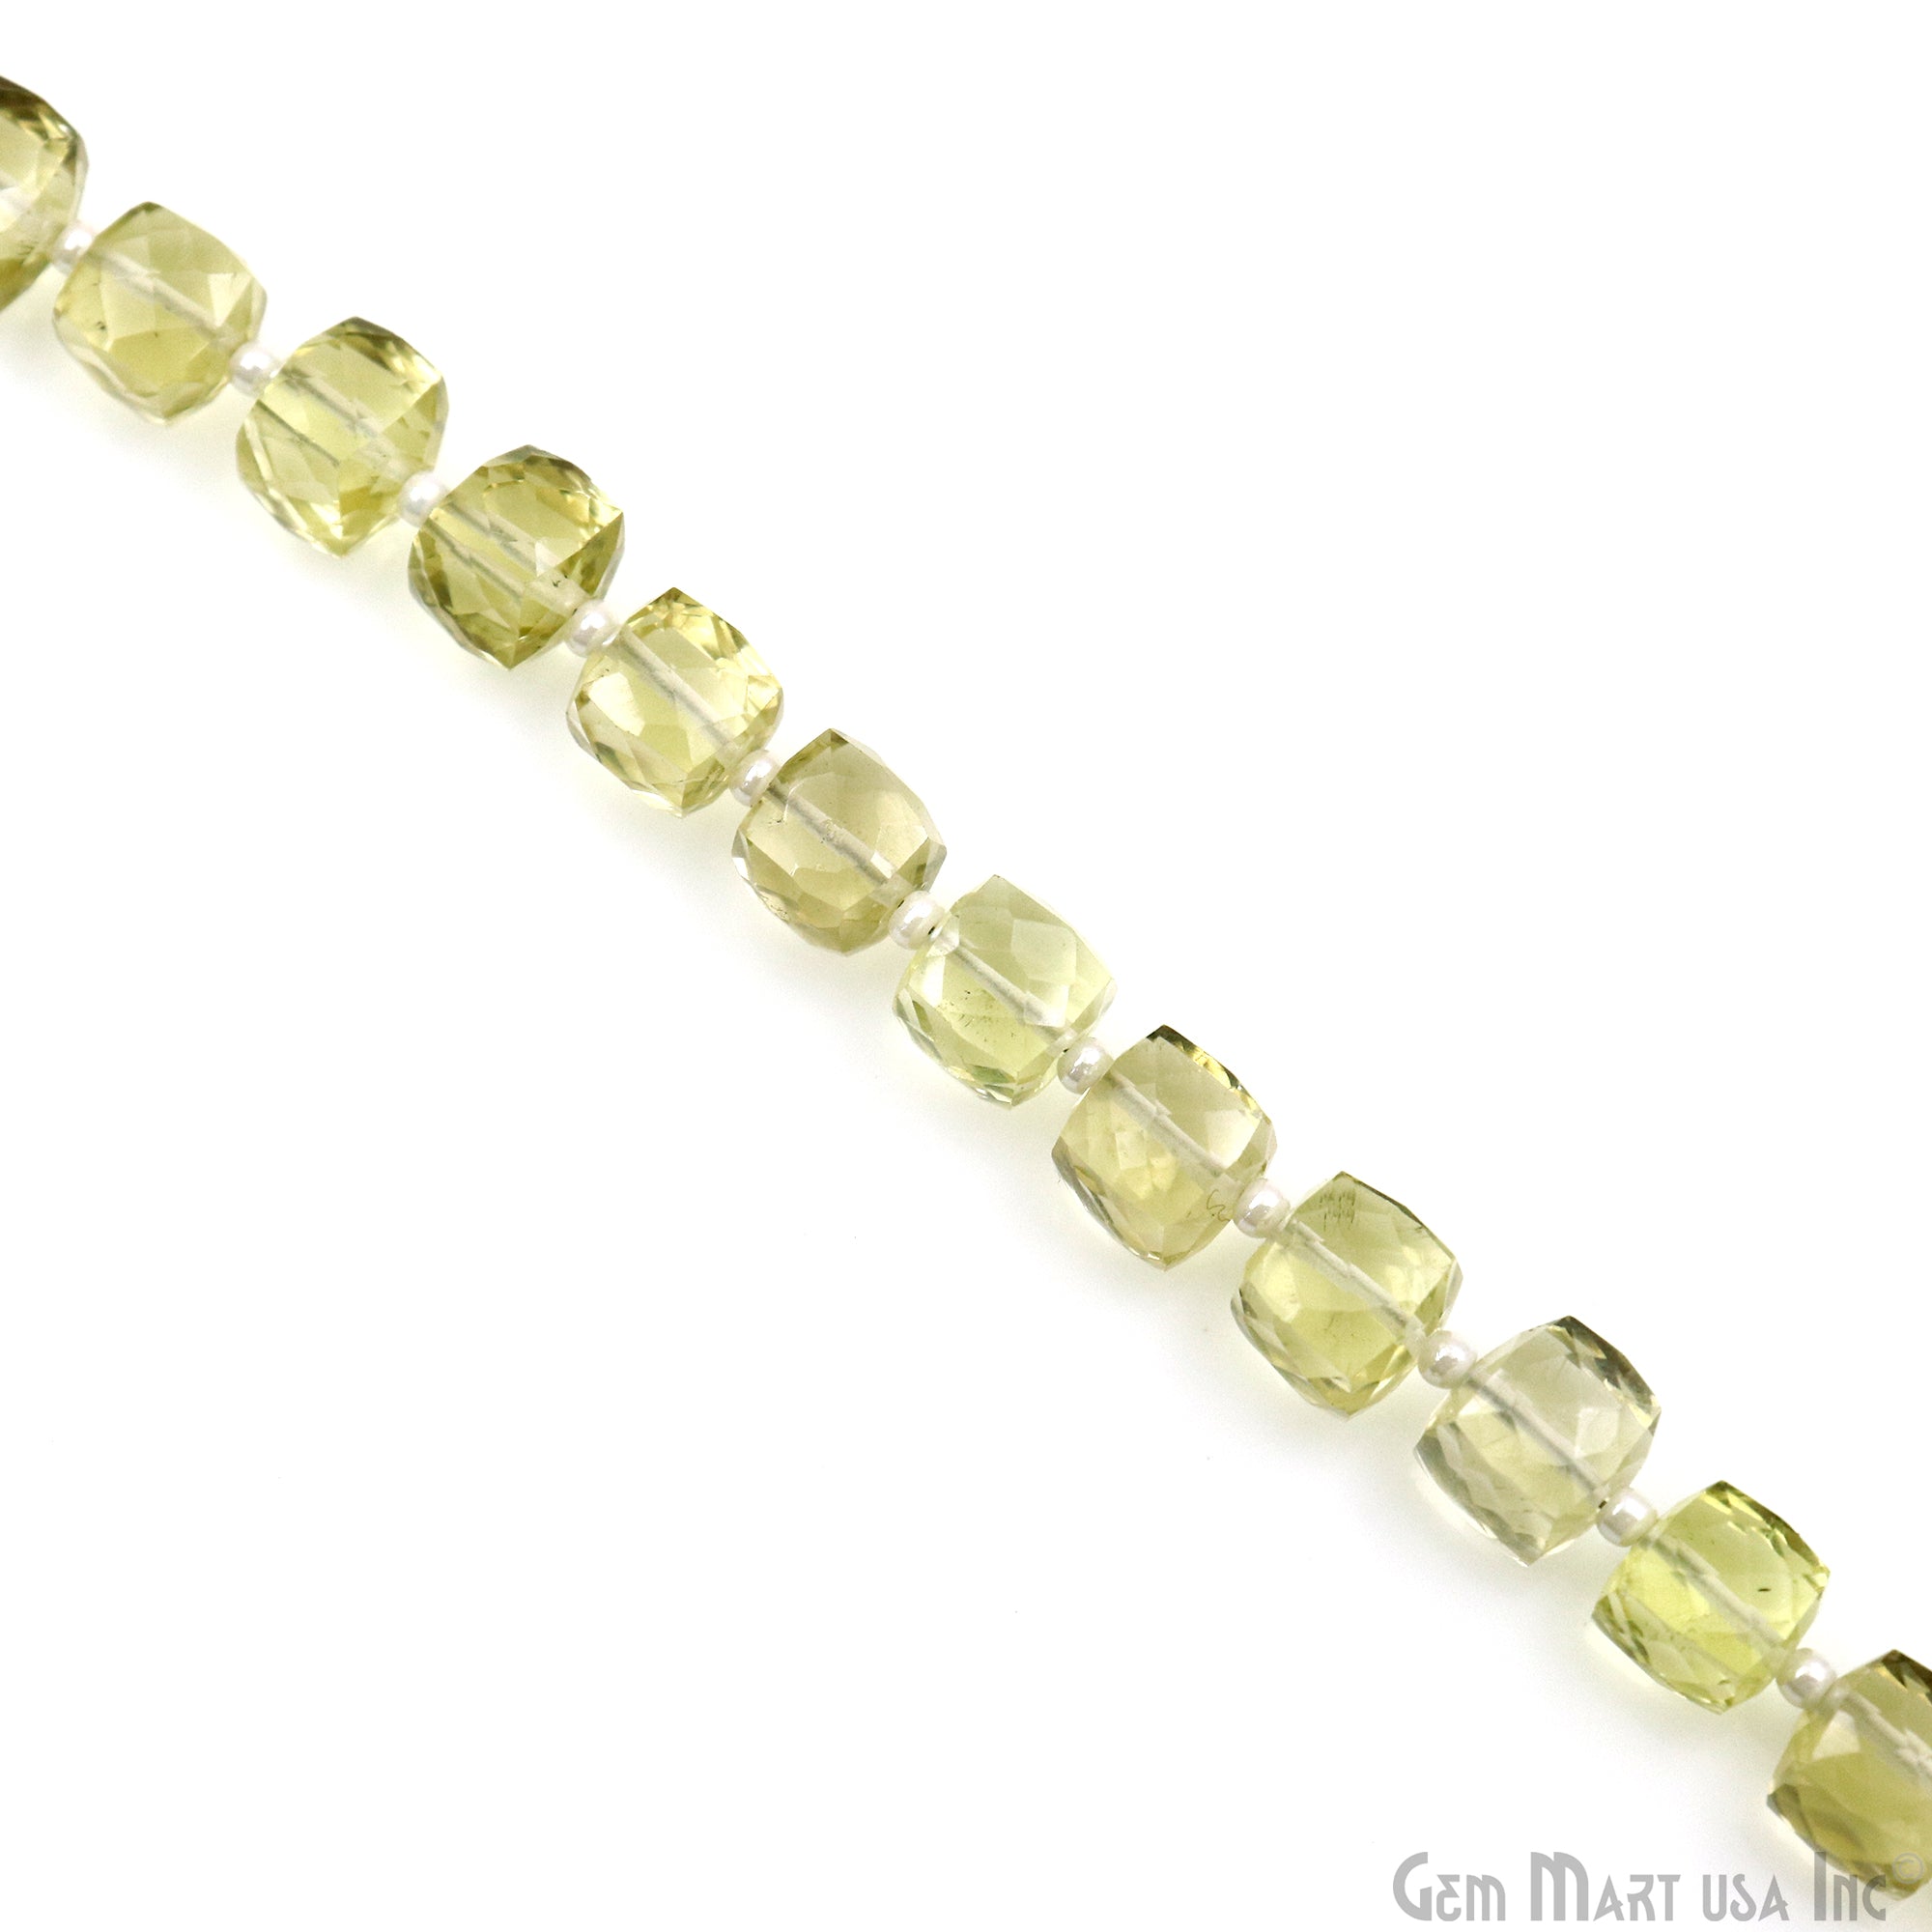 Lemon Topaz Faceted Box Shape 6-7mm Gemstone Beads Strand 7 Inch